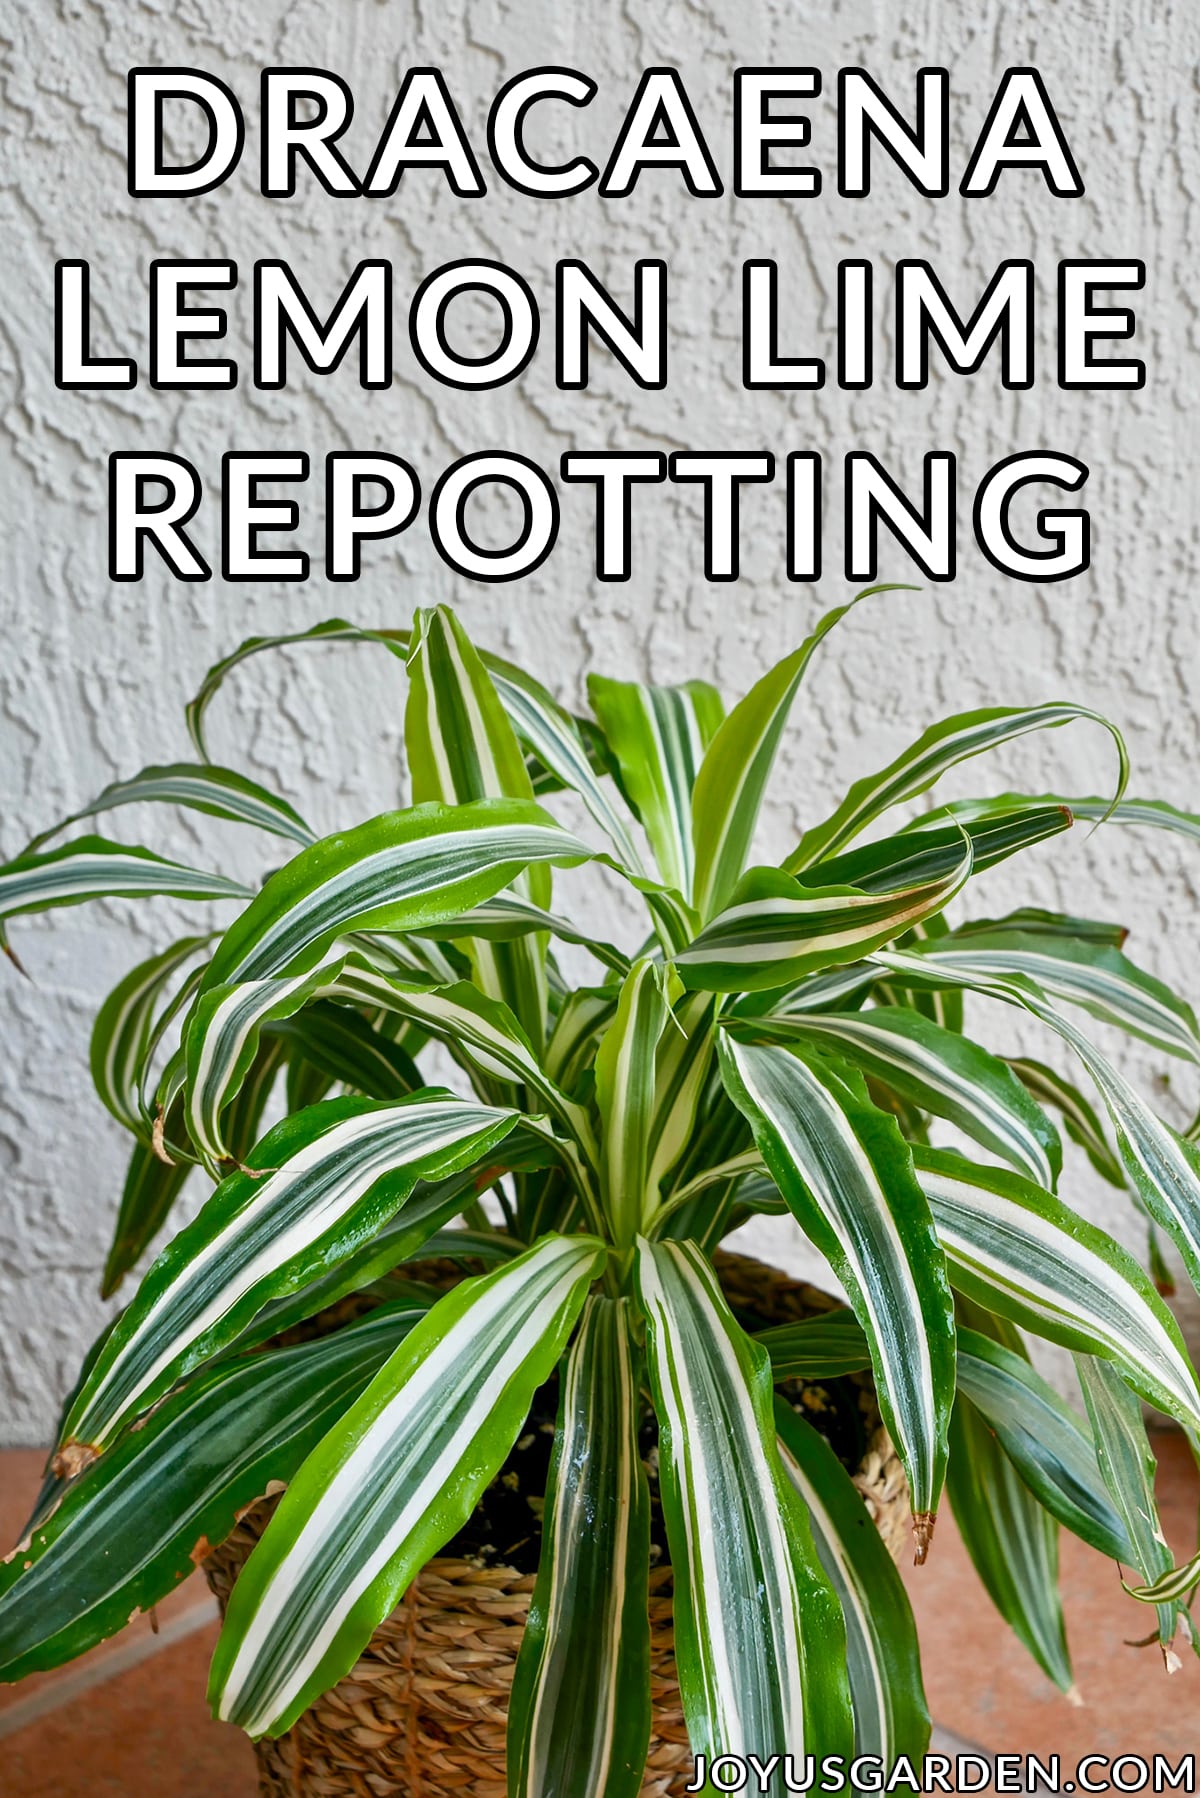  Rinvaso della Dracaena Lemon Lime: il mix da usare e i passaggi da fare